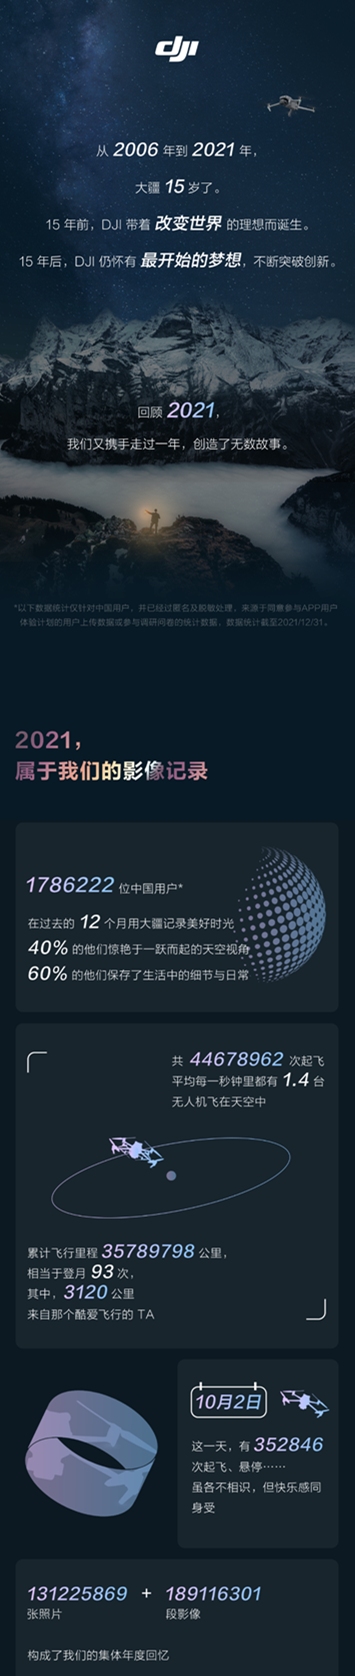 大疆2021飞行报告出炉：中国累计“登月”93次 有人从哈尔滨飞到海口